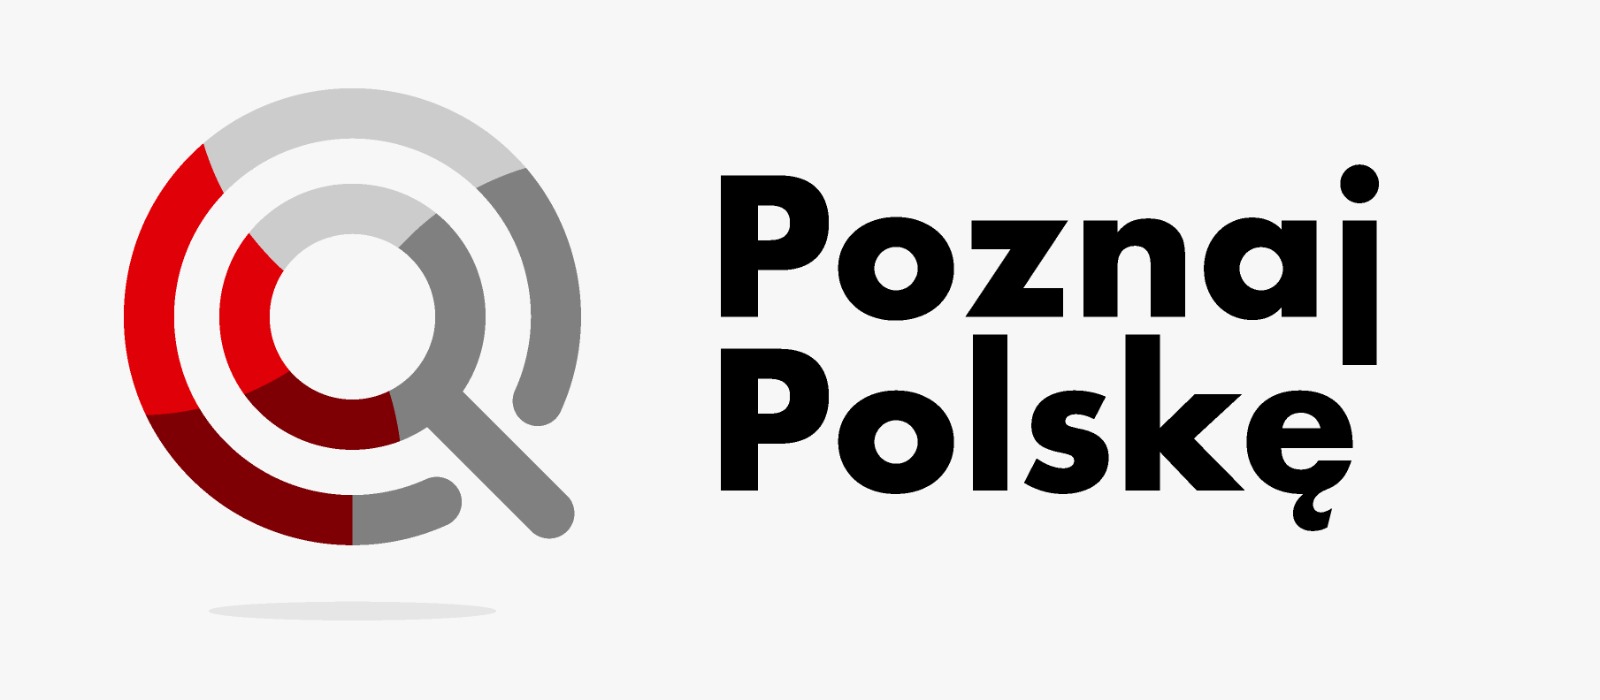 Logotyp "Poznaj Polskę" czarny napis, szaro czerwona grafika przypominająca lupę